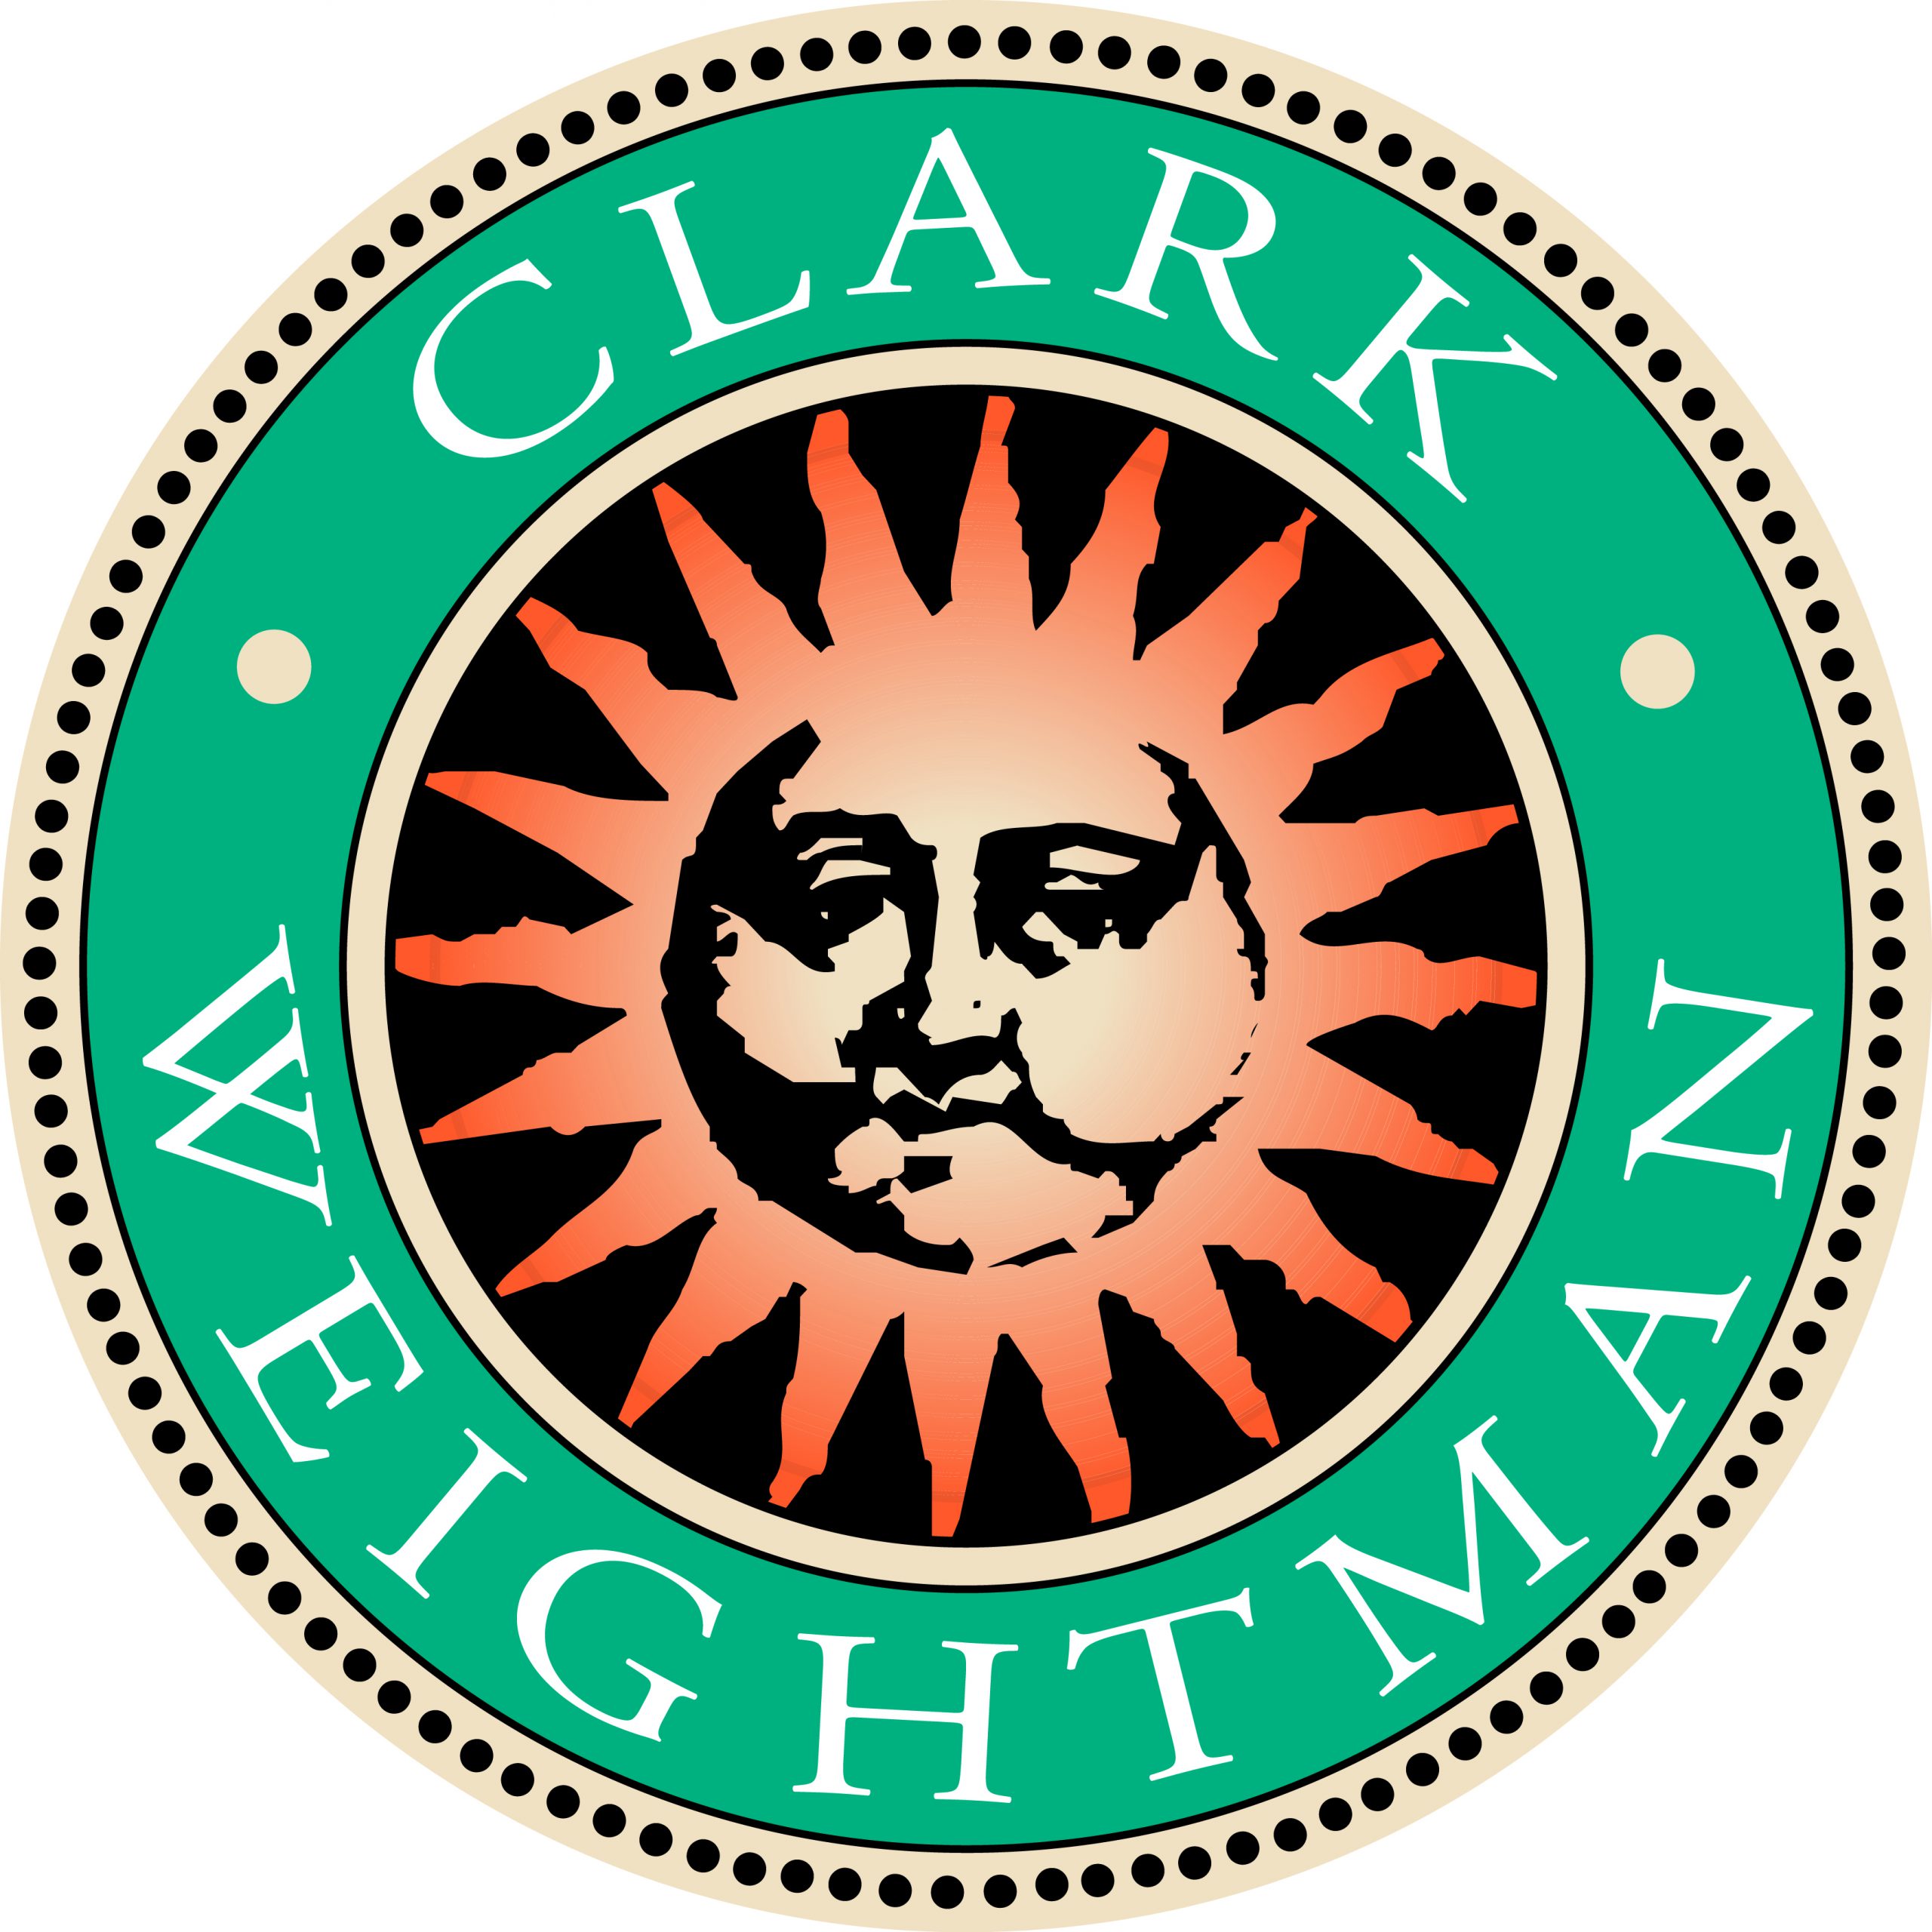 Clark Weightman's logo